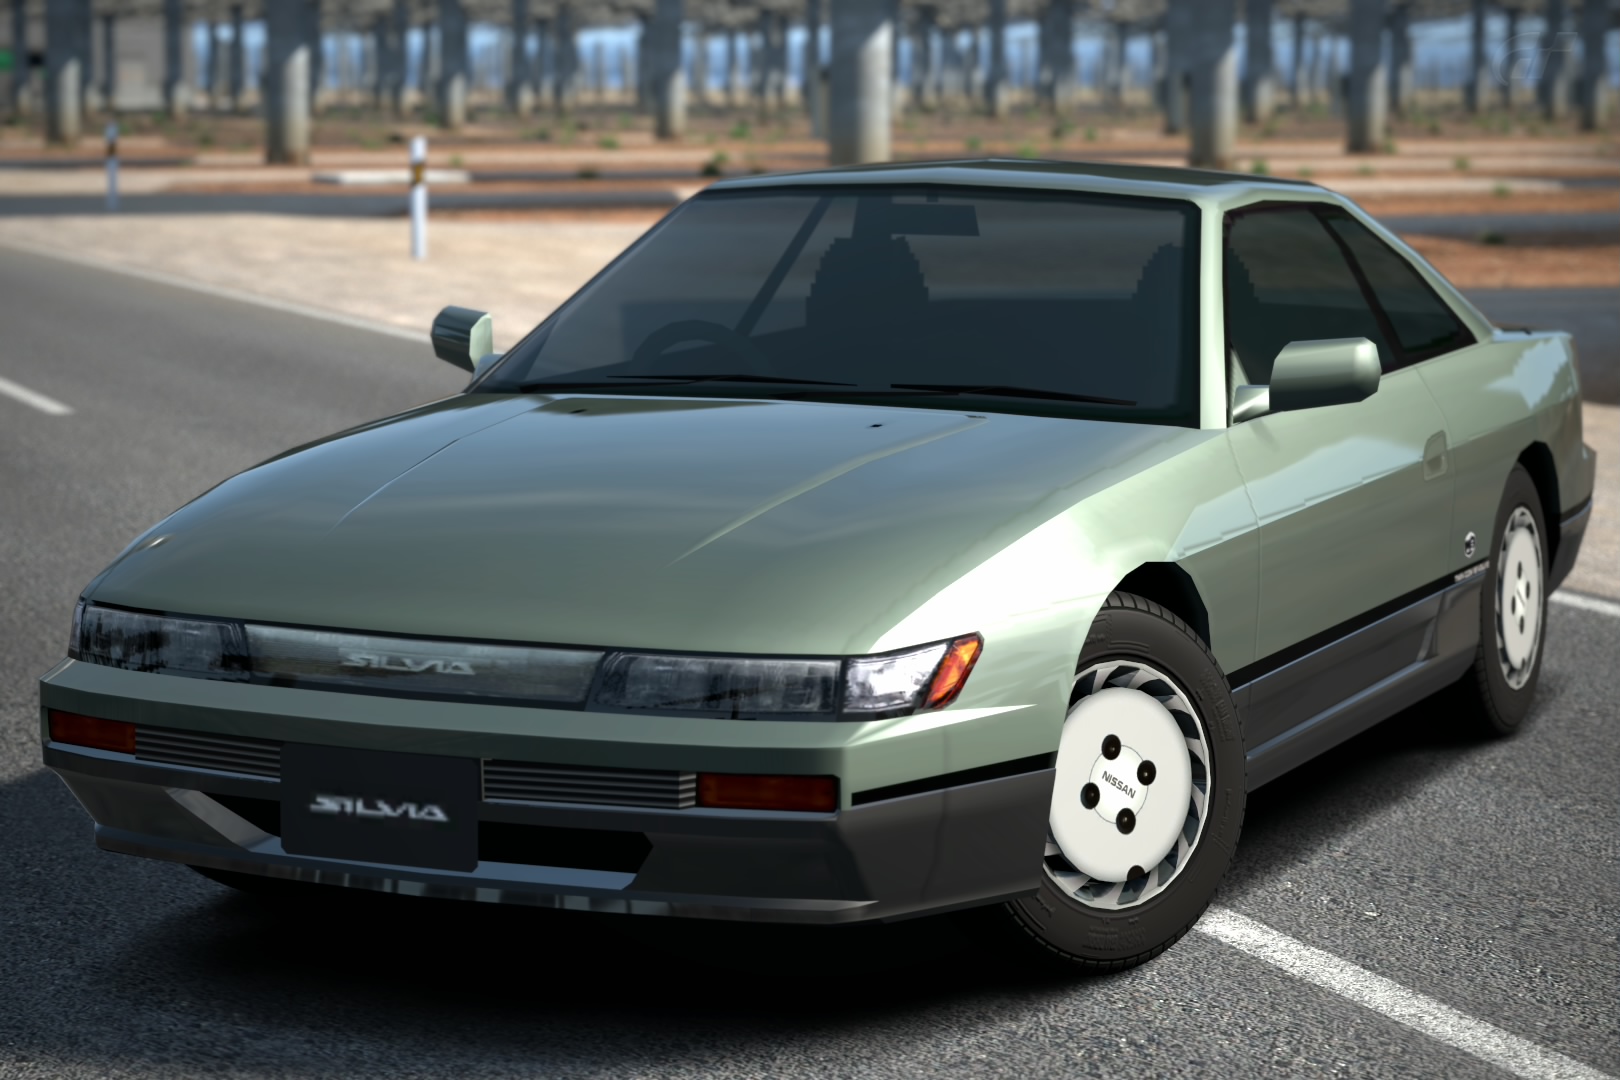 Nissan Silvia Q S S13 Gran Turismo Wiki Fandom